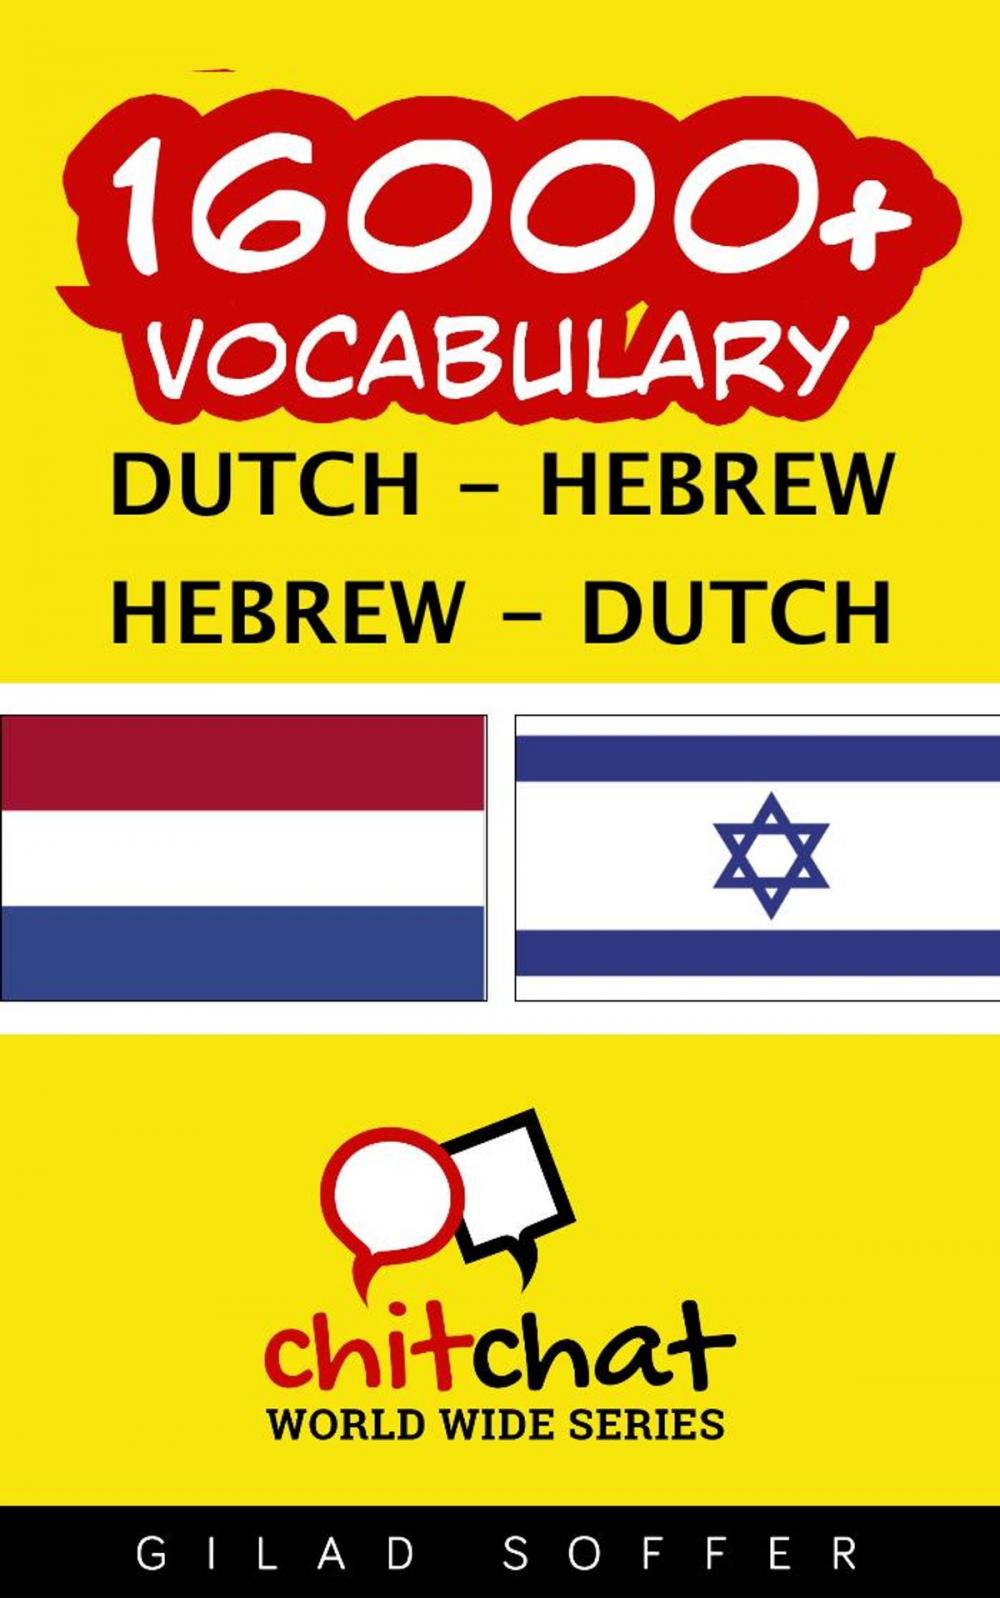 Big bigCover of 16000+ Vocabulary Dutch - Hebrew